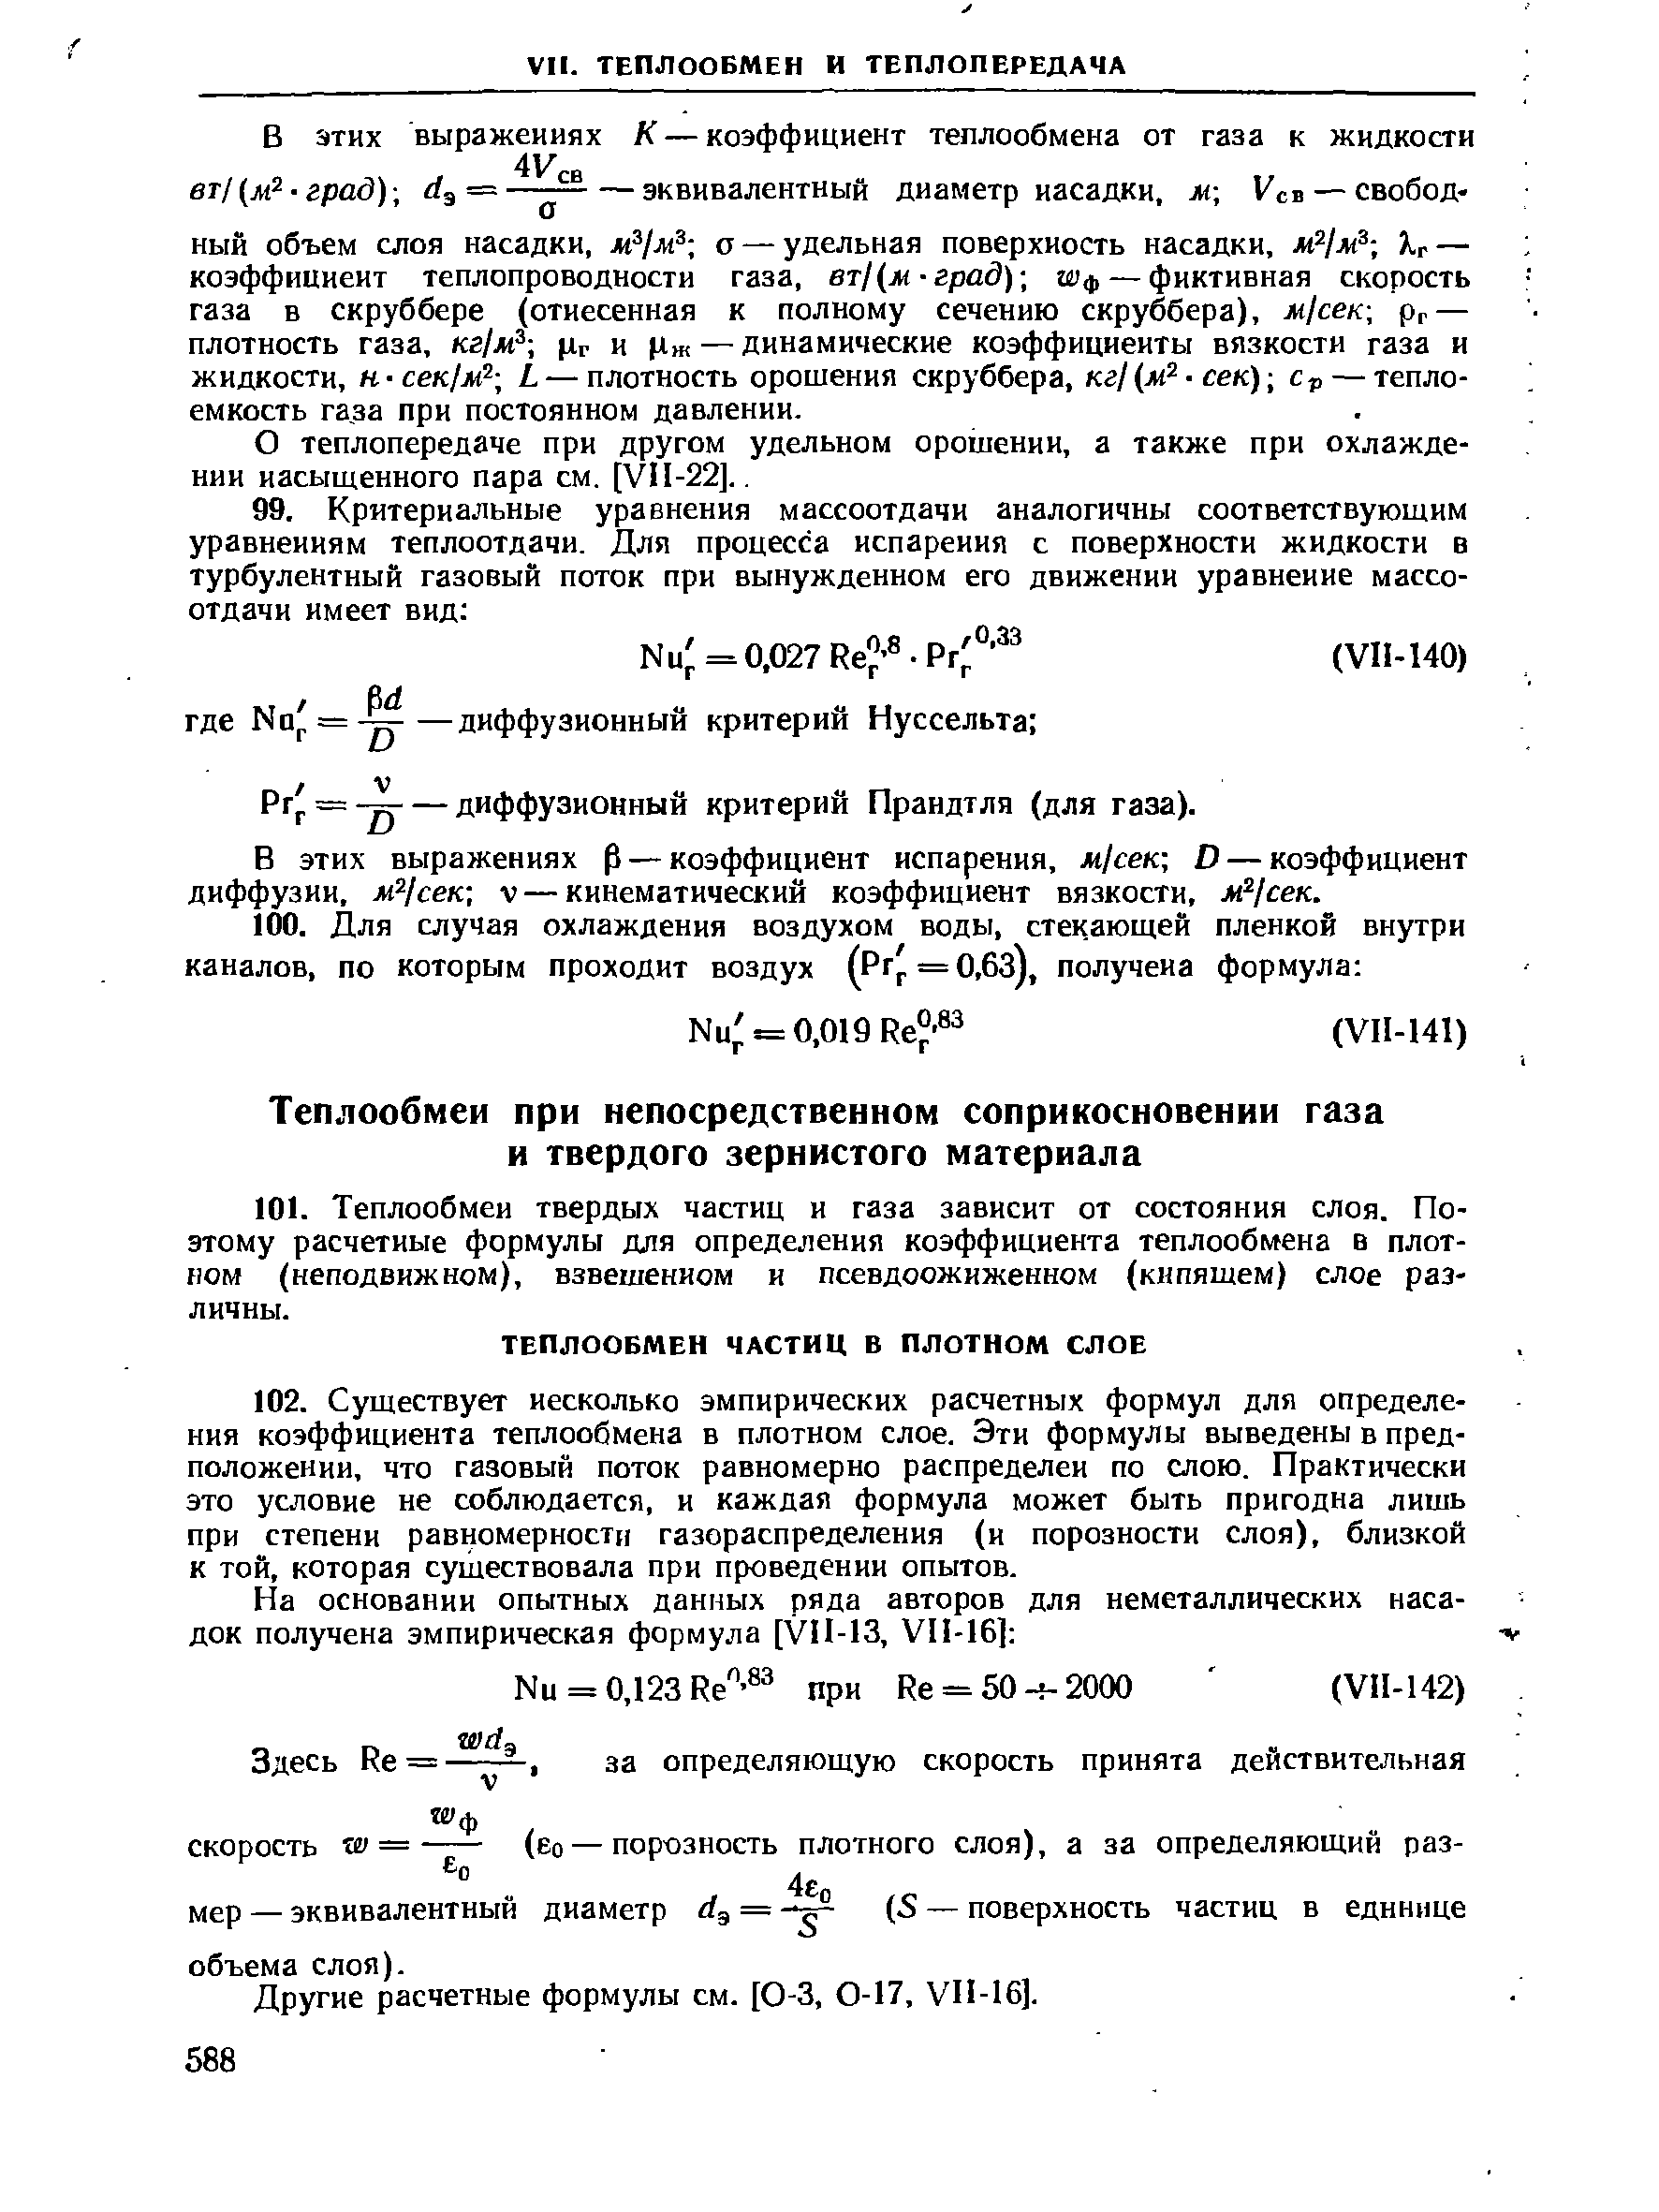 Другие расчетные формулы см. [0-3, 0-17. УП-16].